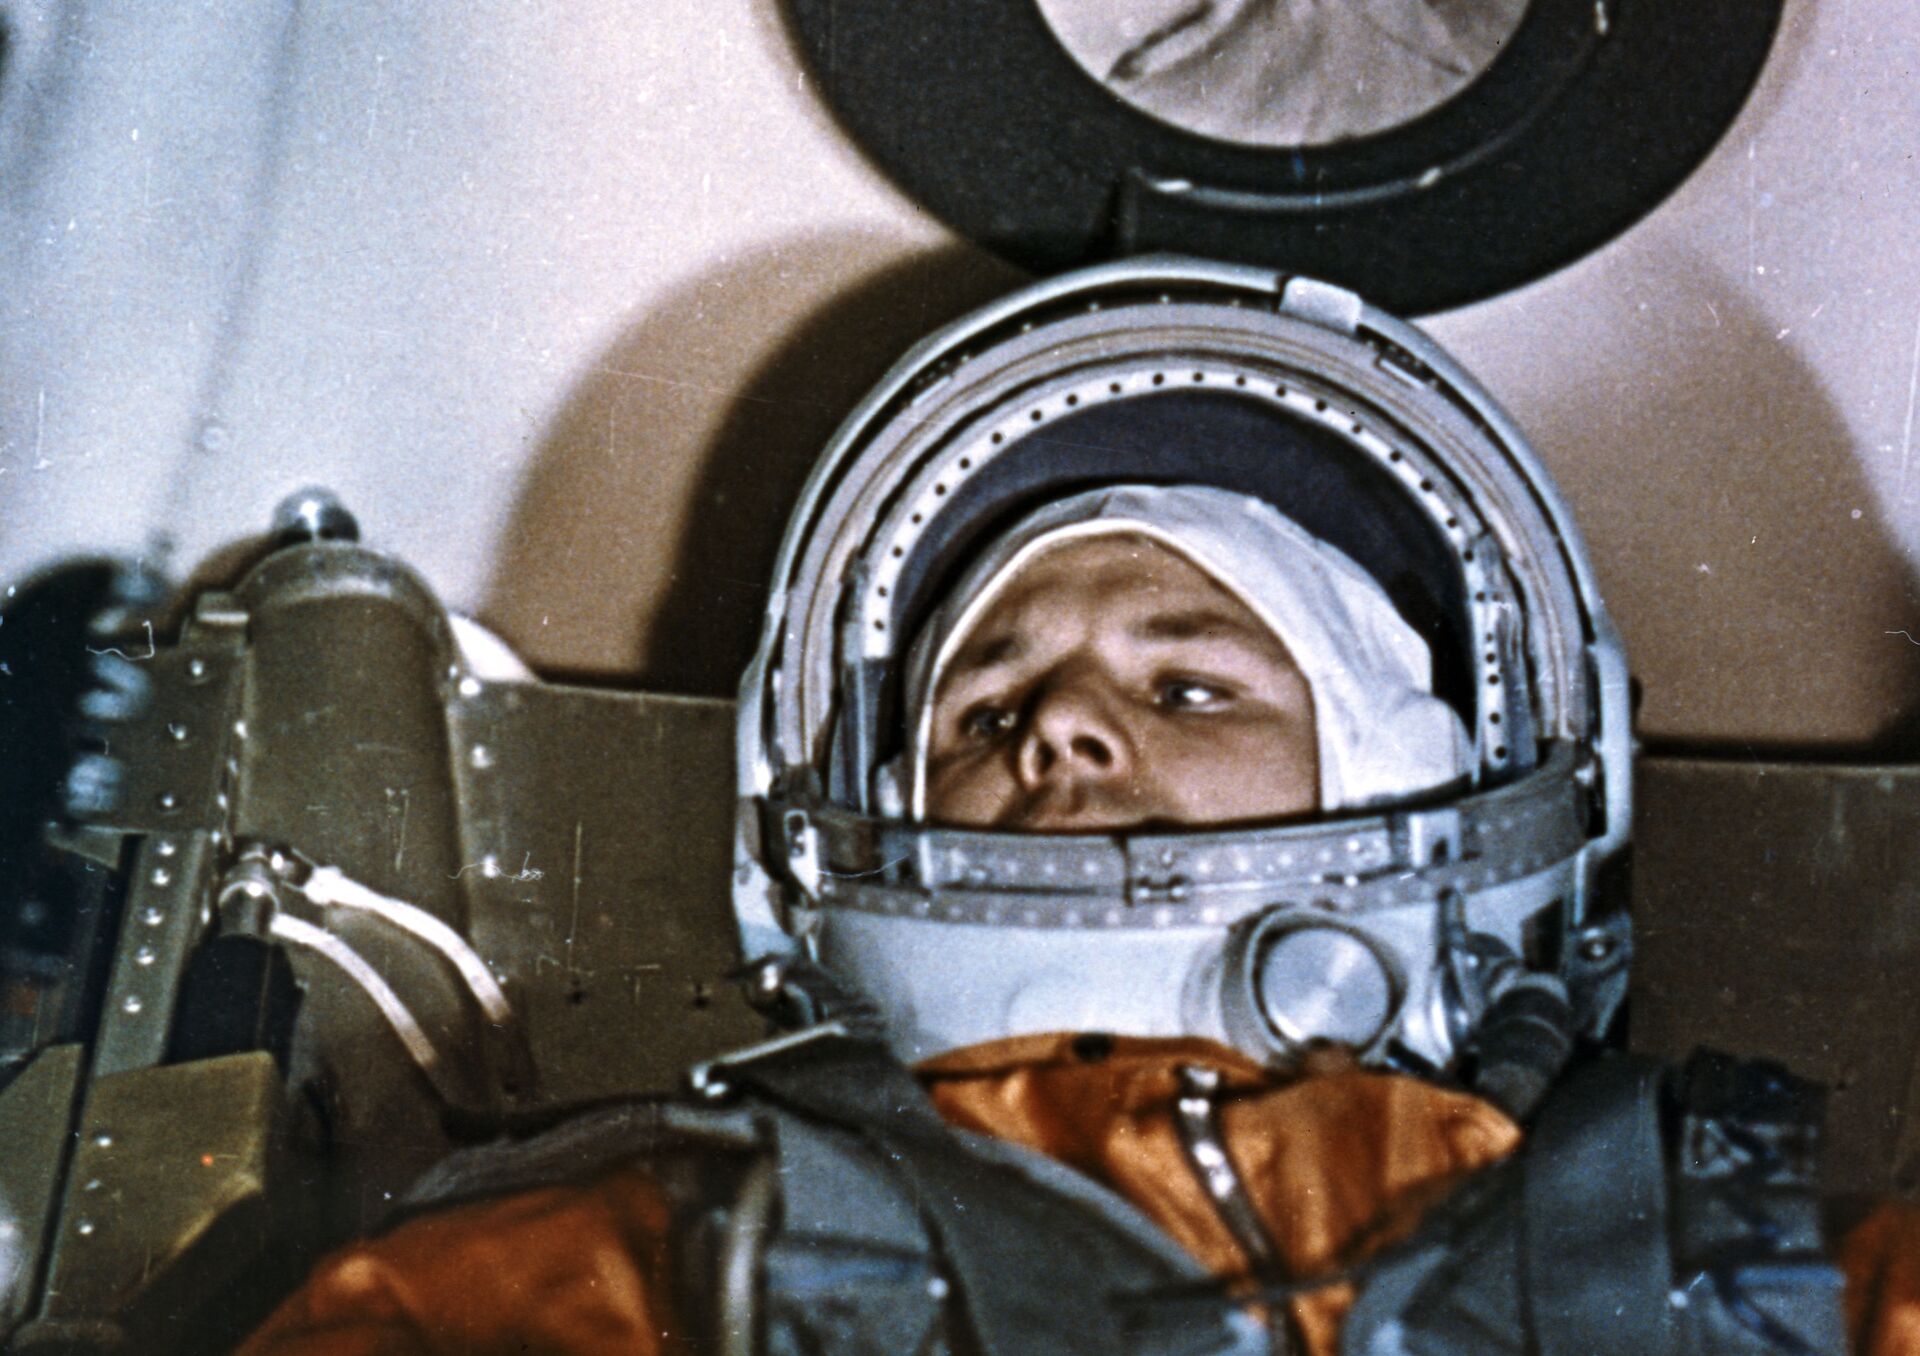 Sovjetski kosmonaut Jurij Gagarin u svemirskoj letelici „Vostok-1“ pre lansiranja - Sputnik Srbija, 1920, 13.07.2021